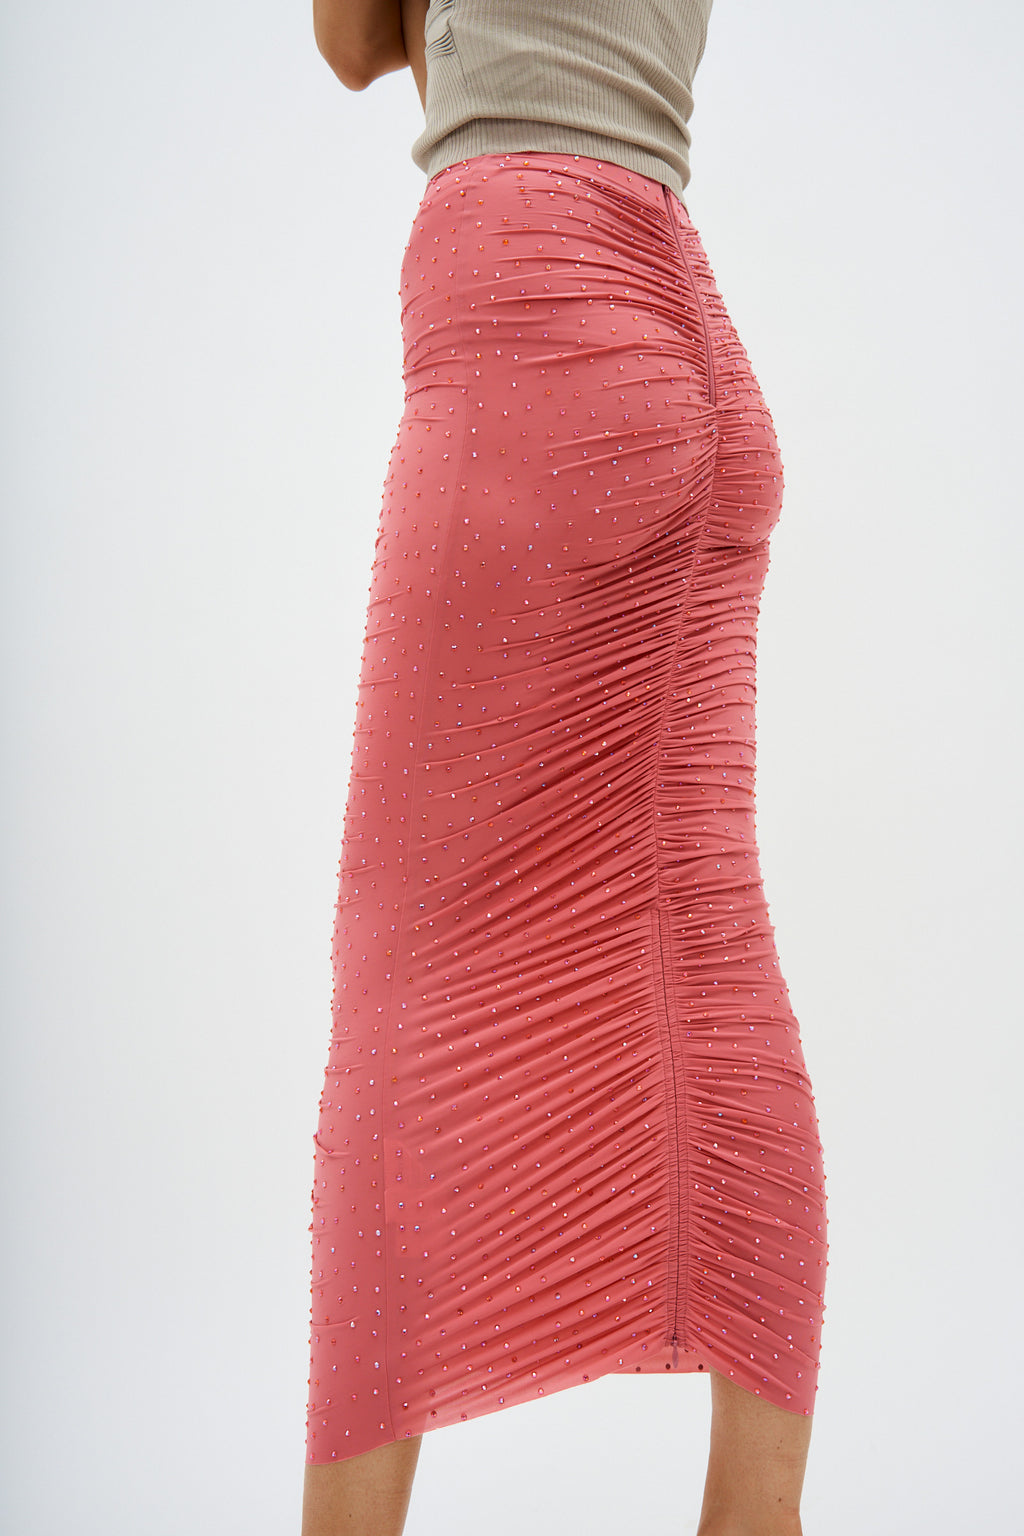 Ruched Crystal Jersey Garnet Rose Skirt